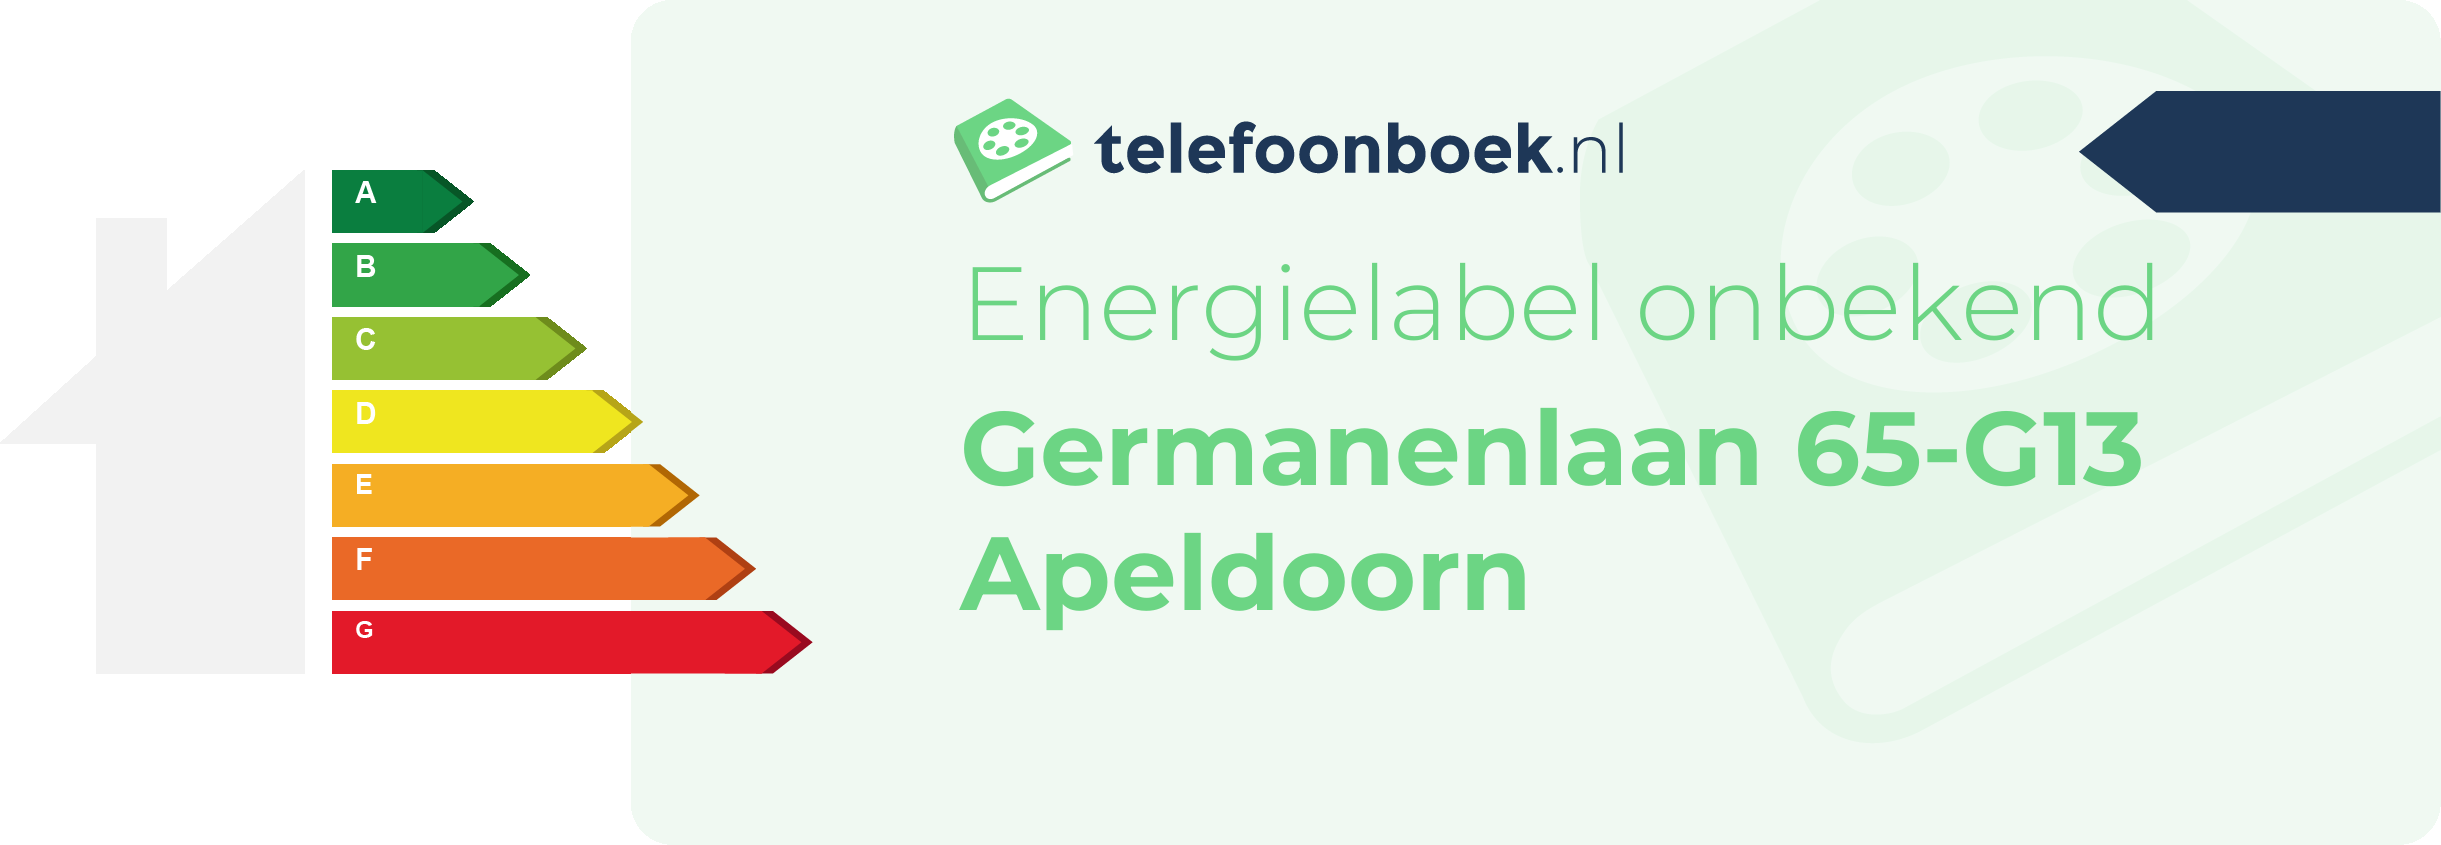 Energielabel Germanenlaan 65-G13 Apeldoorn